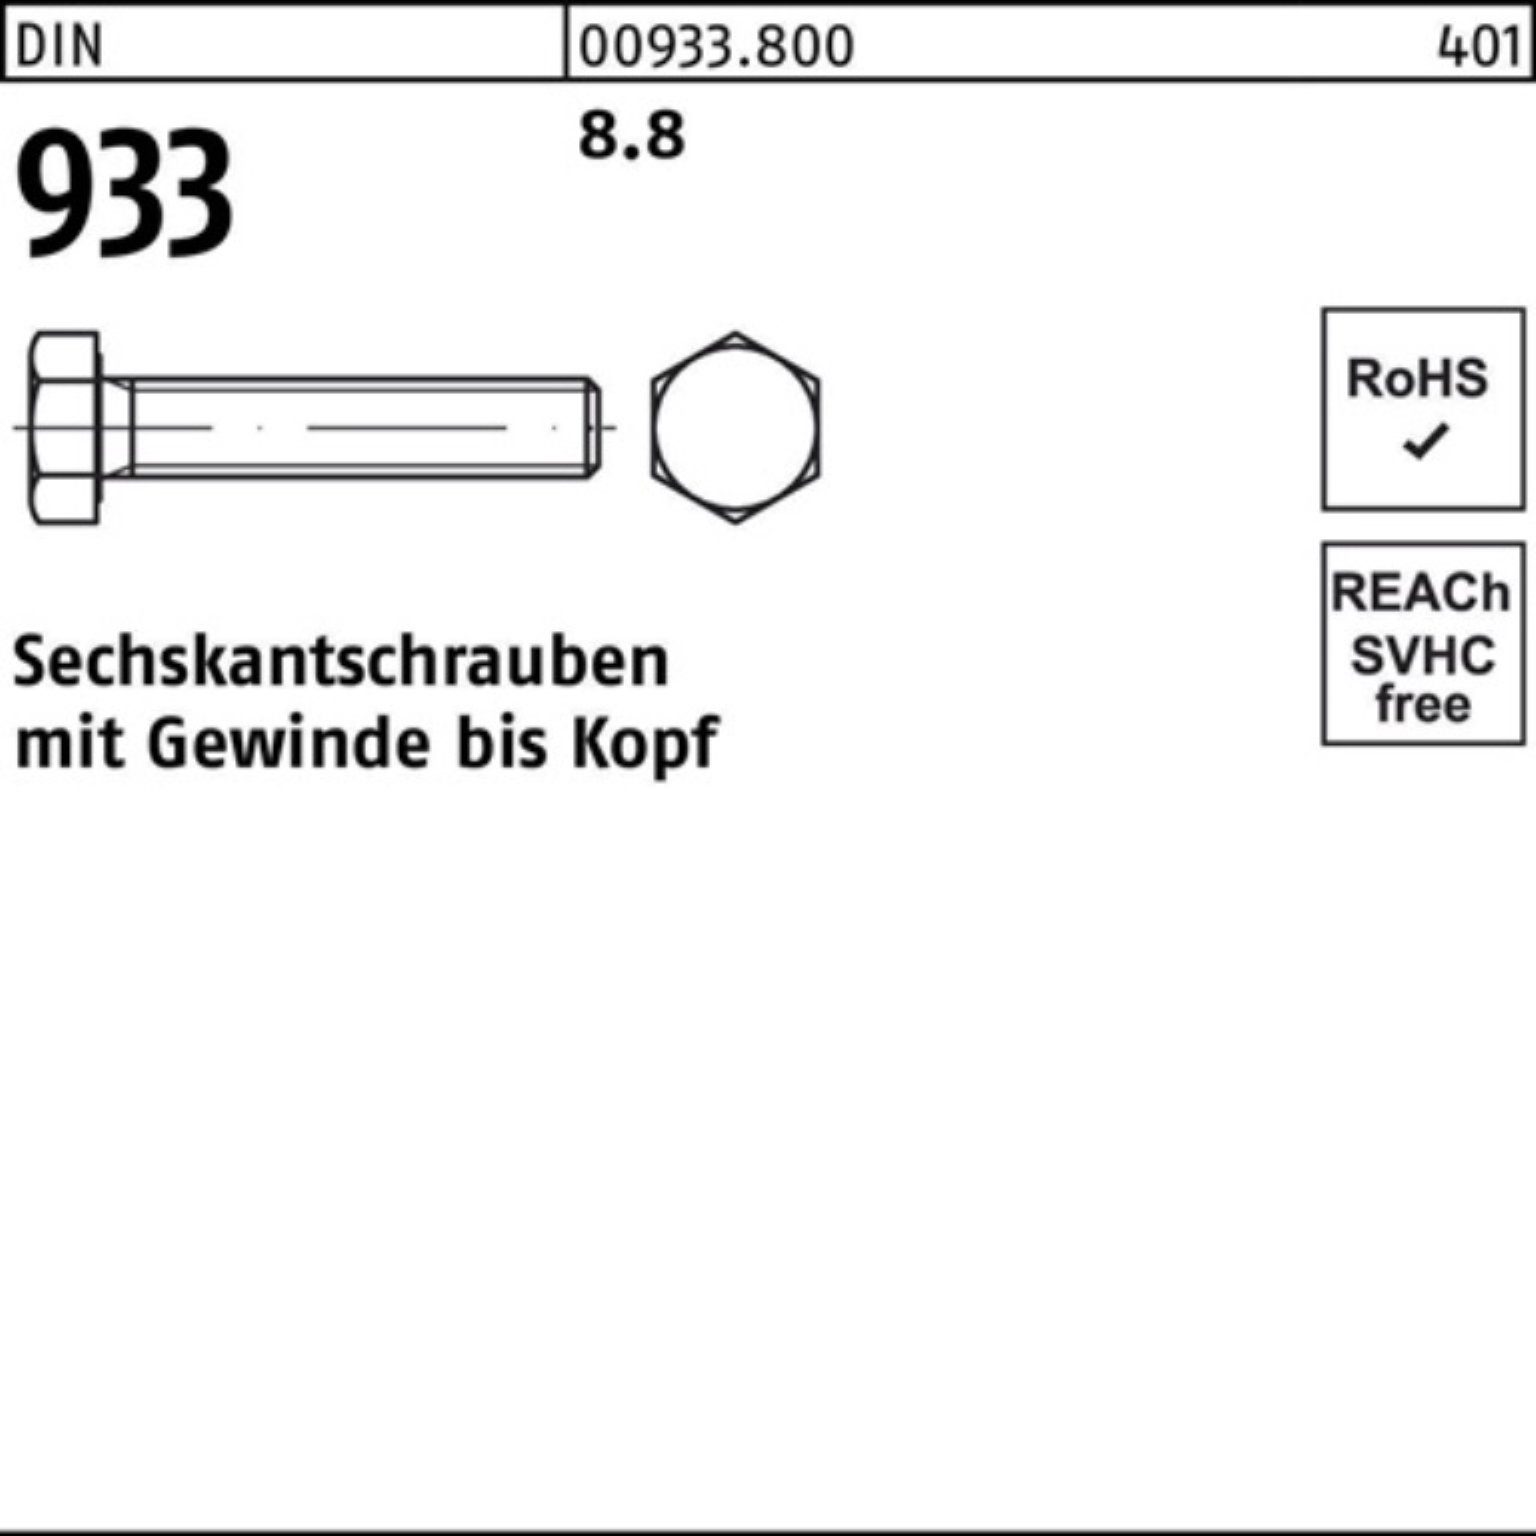 Reyher Sechskantschraube 200er DIN Sechskantschraube Pack 933 VG Stück 200 40 933 DIN 8.8 M7x